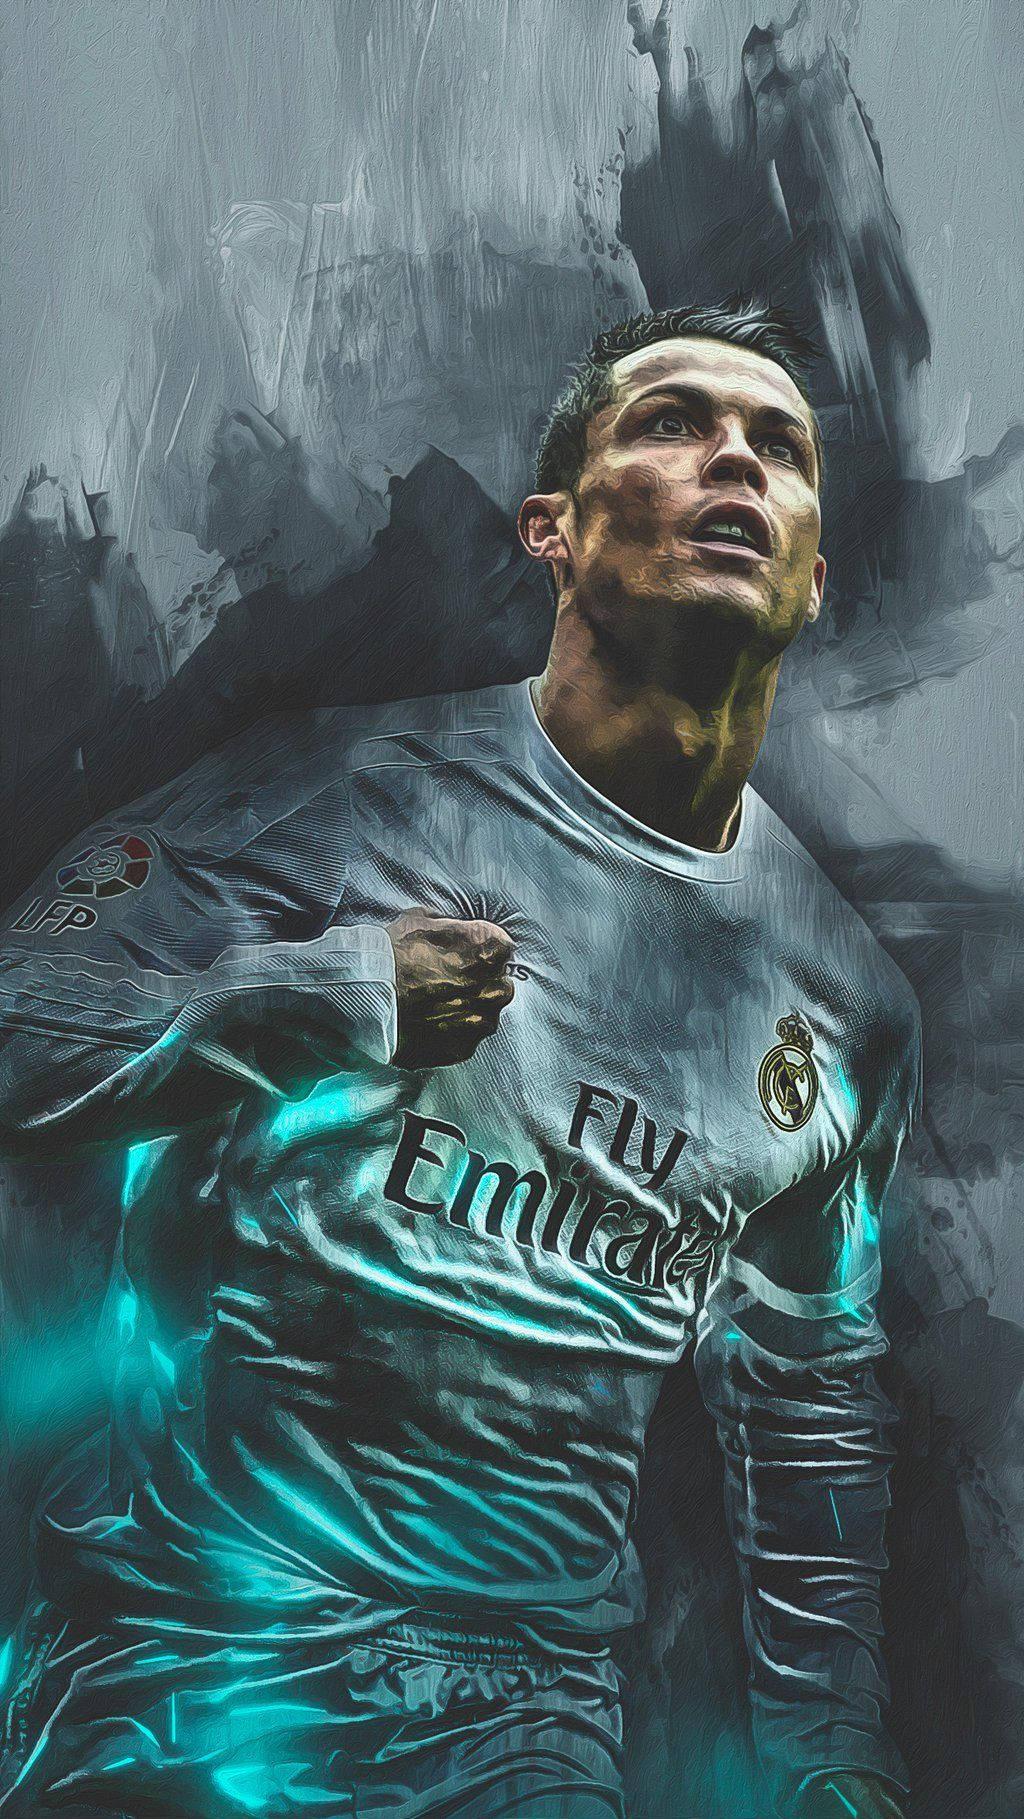 Cristiano Ronaldo Soccer Legend From Portugal Wallpaper